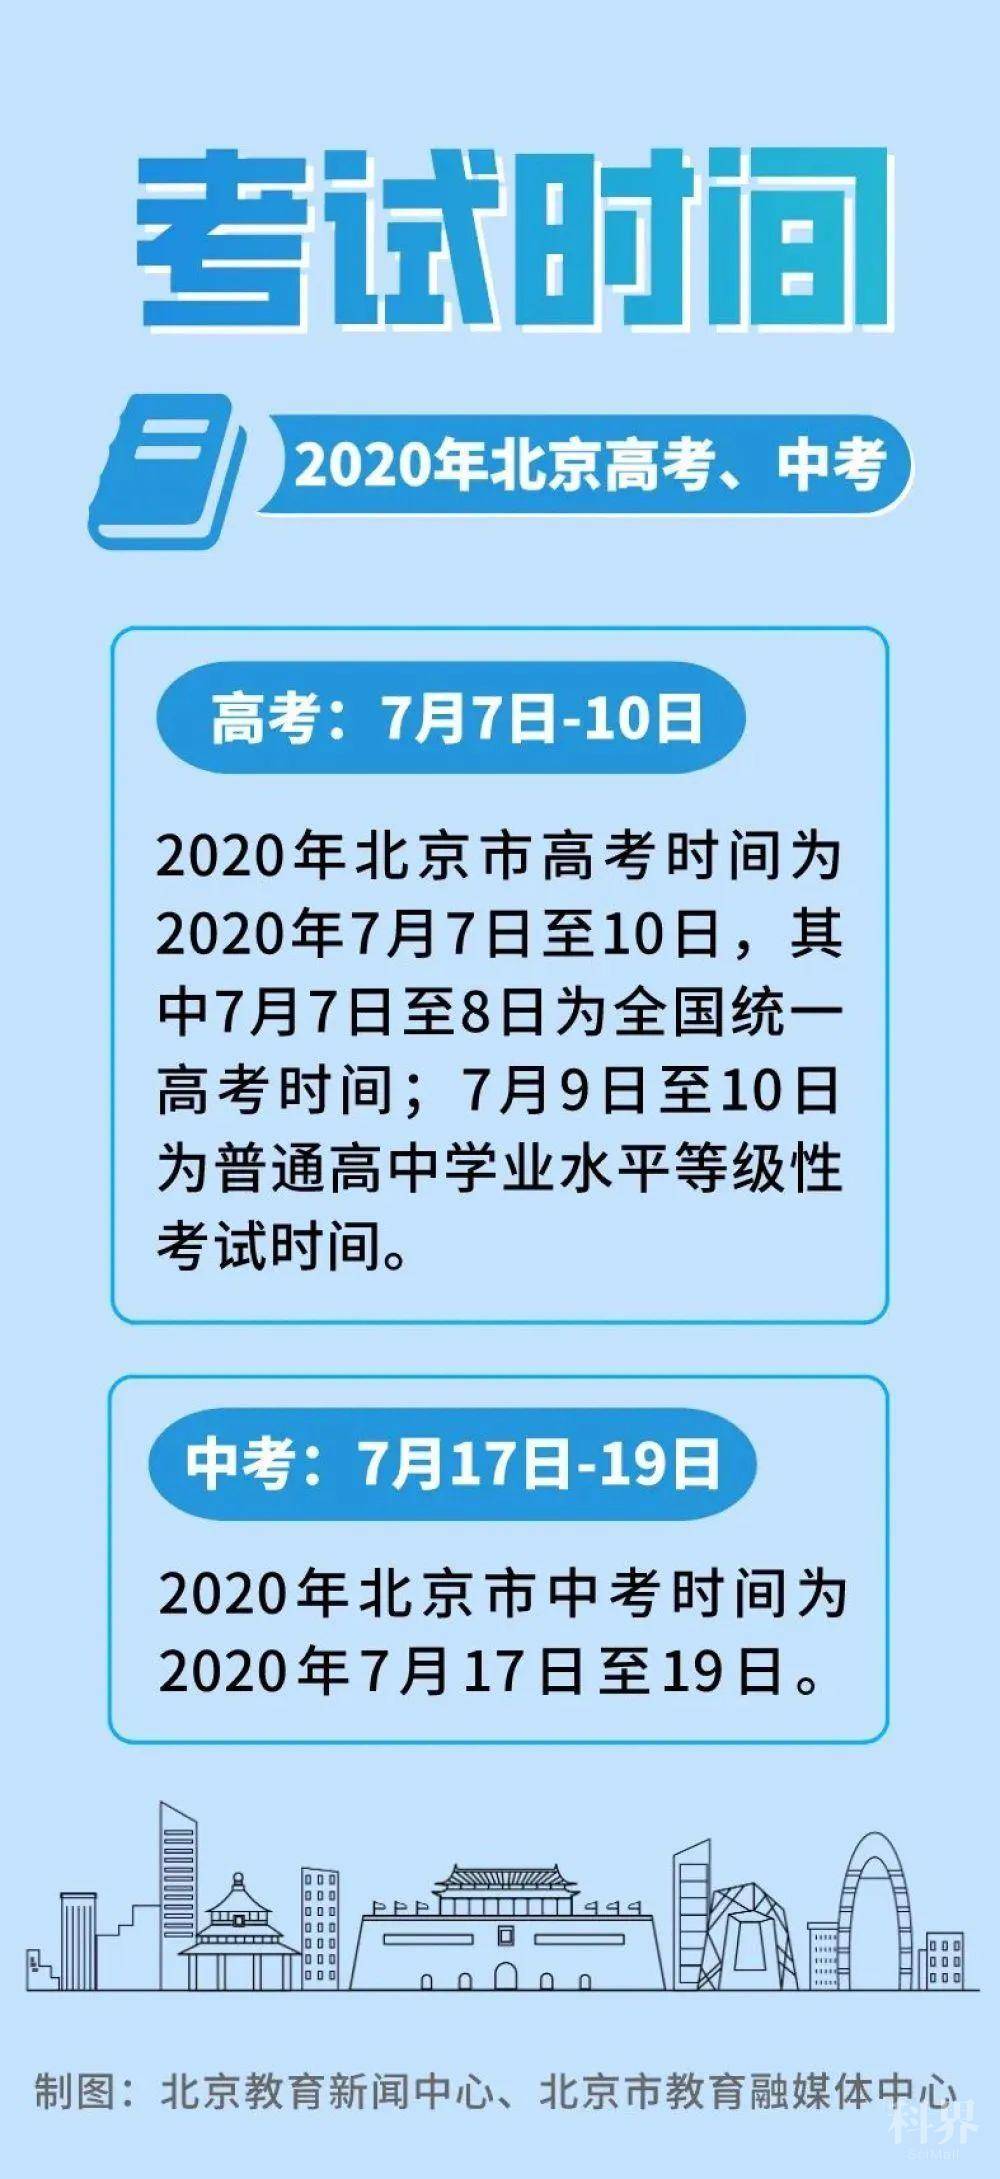 北京中高考时间及初高三开学安排出炉 学术资讯 科界